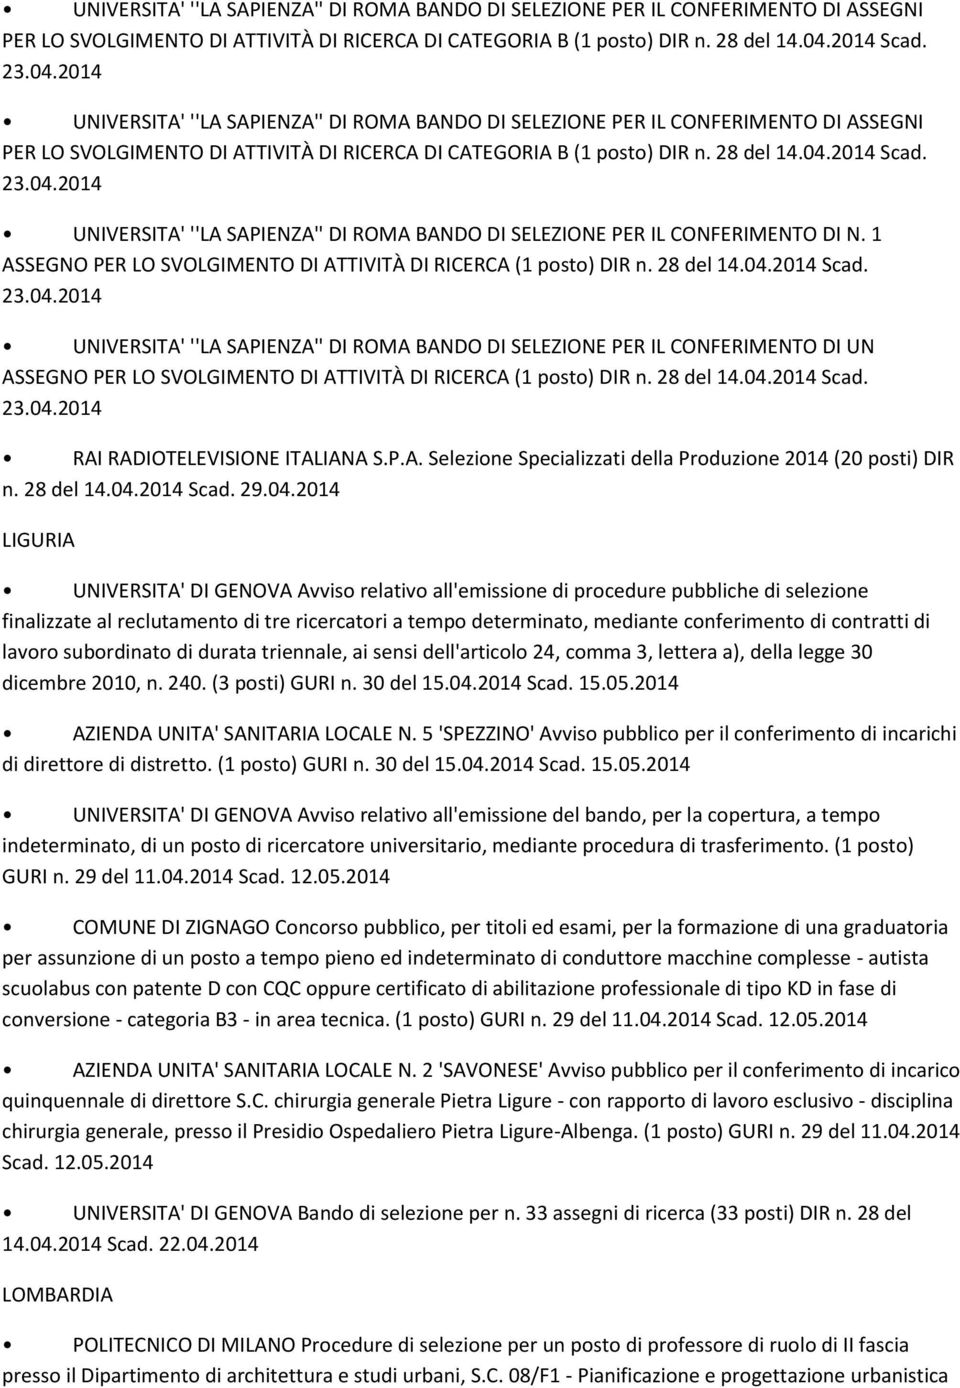 28 del 14.04.2014 Scad. 23.04.2014 UNIVERSITA' ''LA SAPIENZA'' DI ROMA BANDO DI SELEZIONE PER IL CONFERIMENTO DI UN ASSEGNO PER LO SVOLGIMENTO DI ATTIVITÀ DI RICERCA (1 posto) DIR n. 28 del 14.04.2014 Scad. 23.04.2014 RAI RADIOTELEVISIONE ITALIANA S.